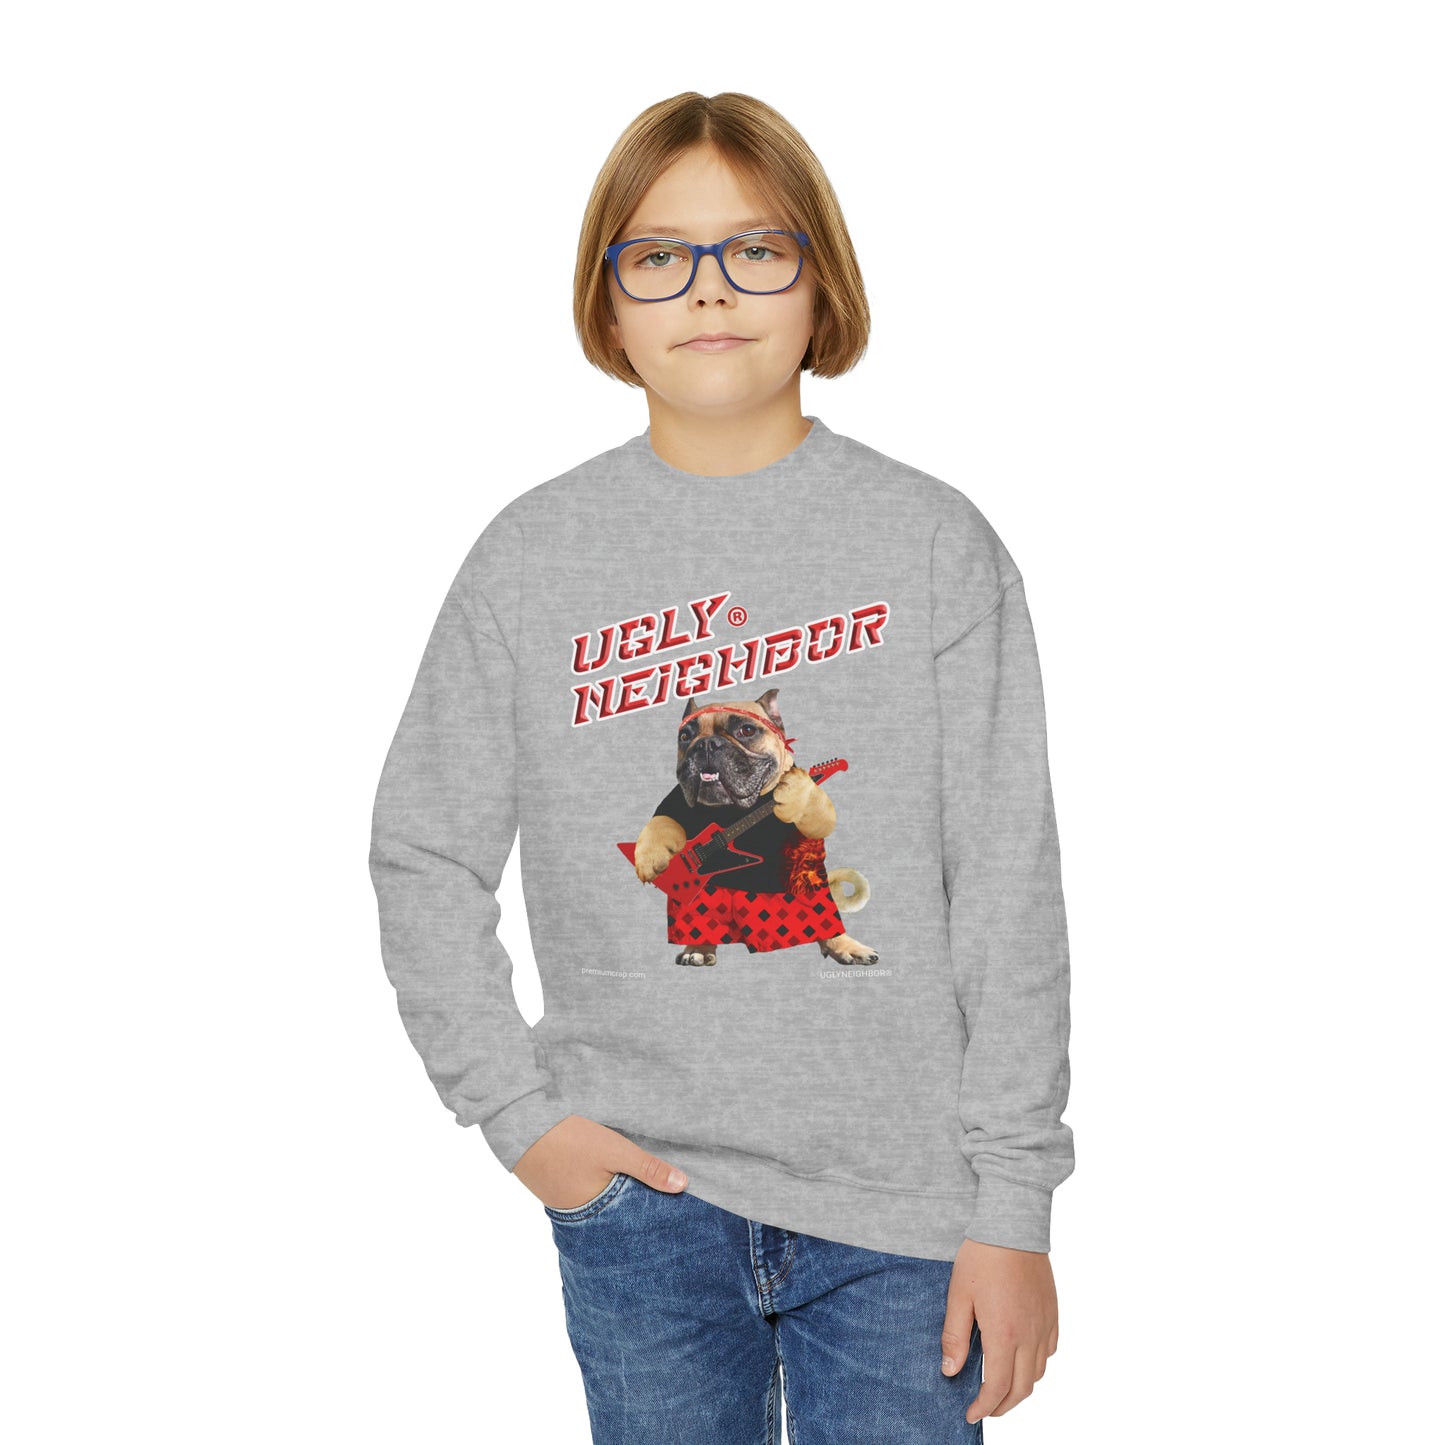 Ugly Neighbor II Youth Crewneck Sweatshirt